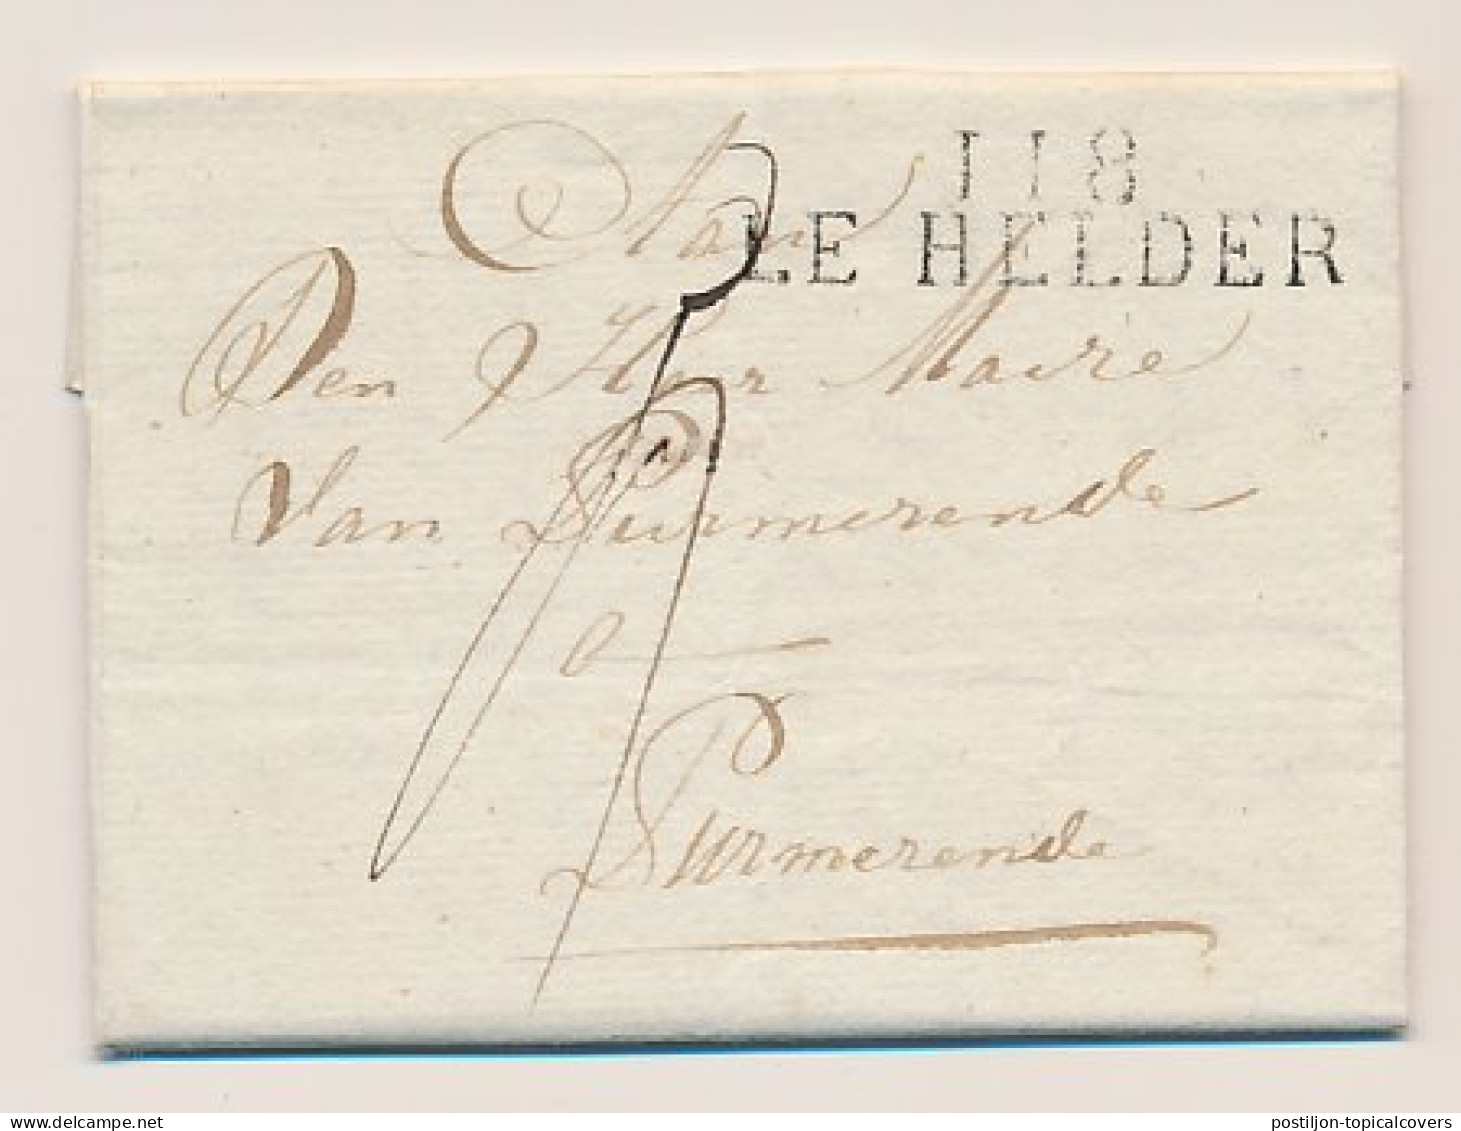 118 LE HELDER - Purmerend 1812 - ...-1852 Voorlopers